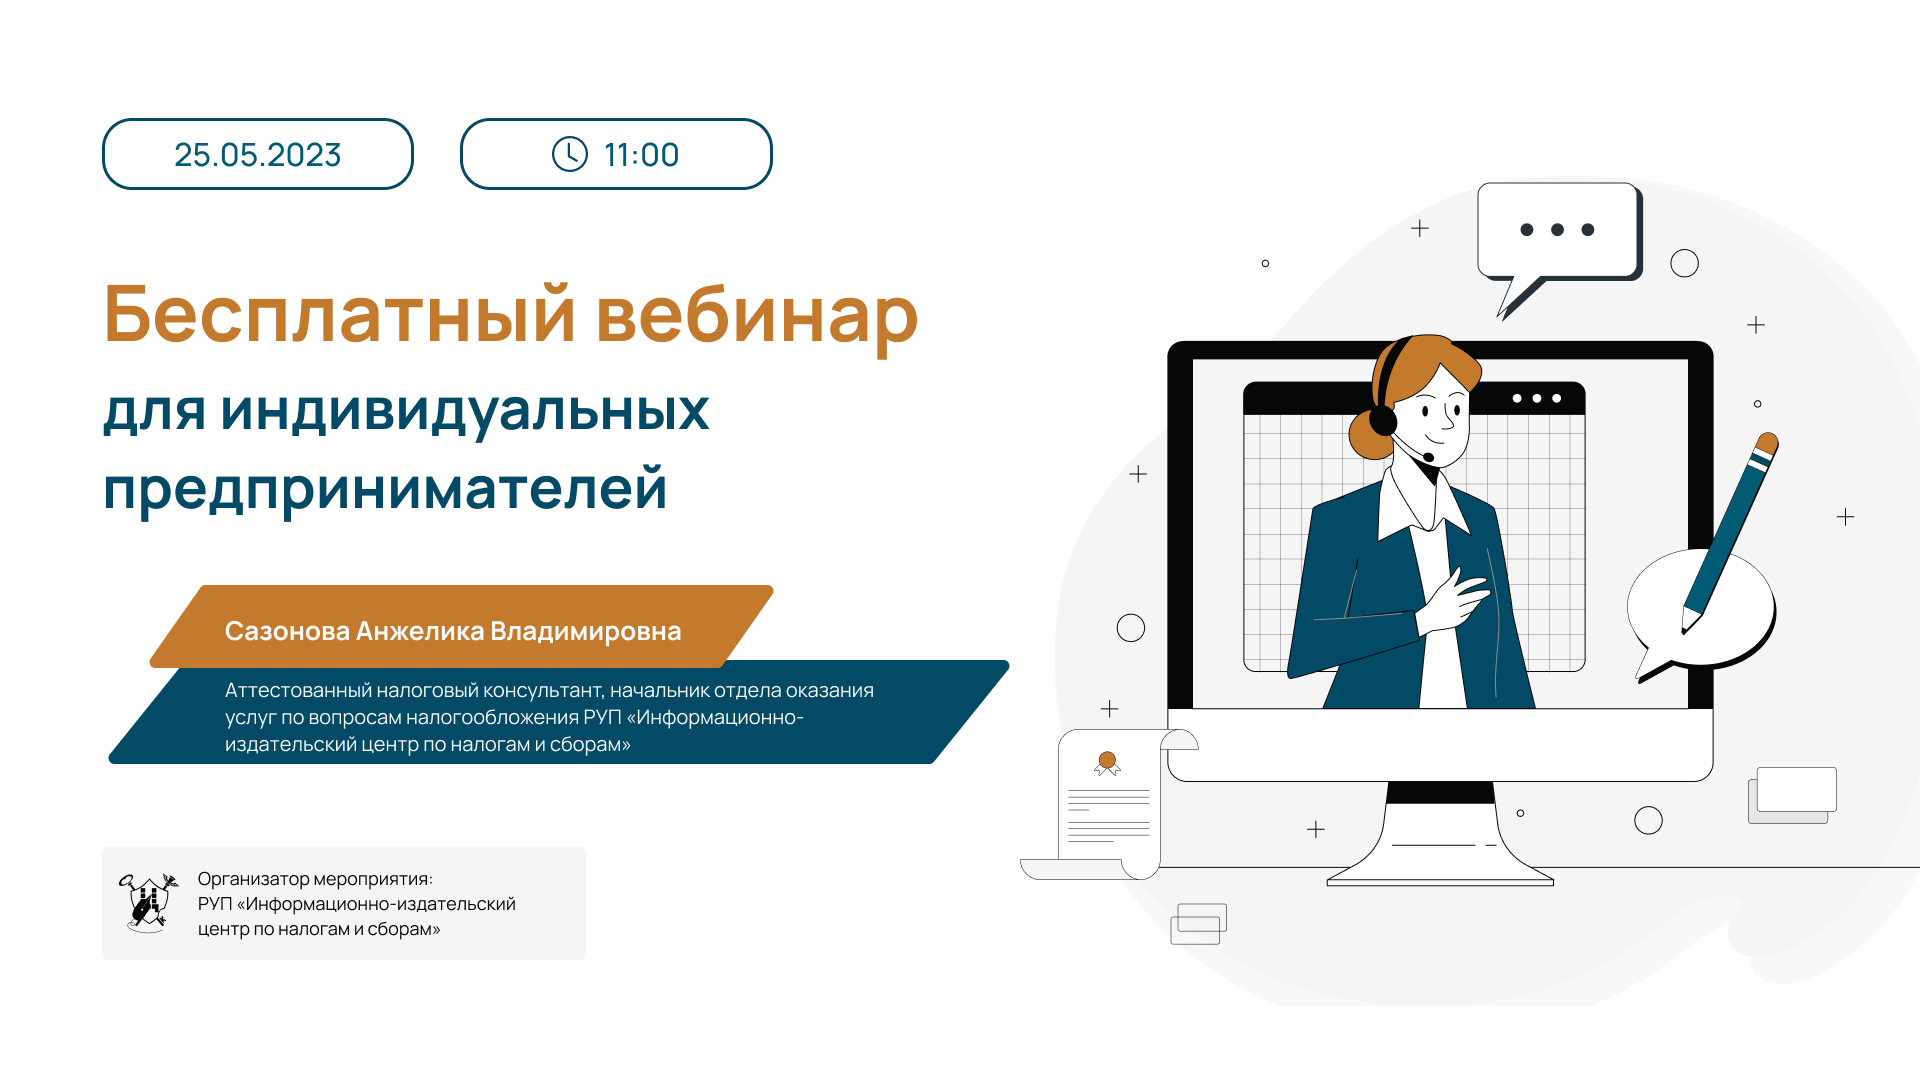 Бесплатный вебинар для индивидуальных предпринимателей от 25.05